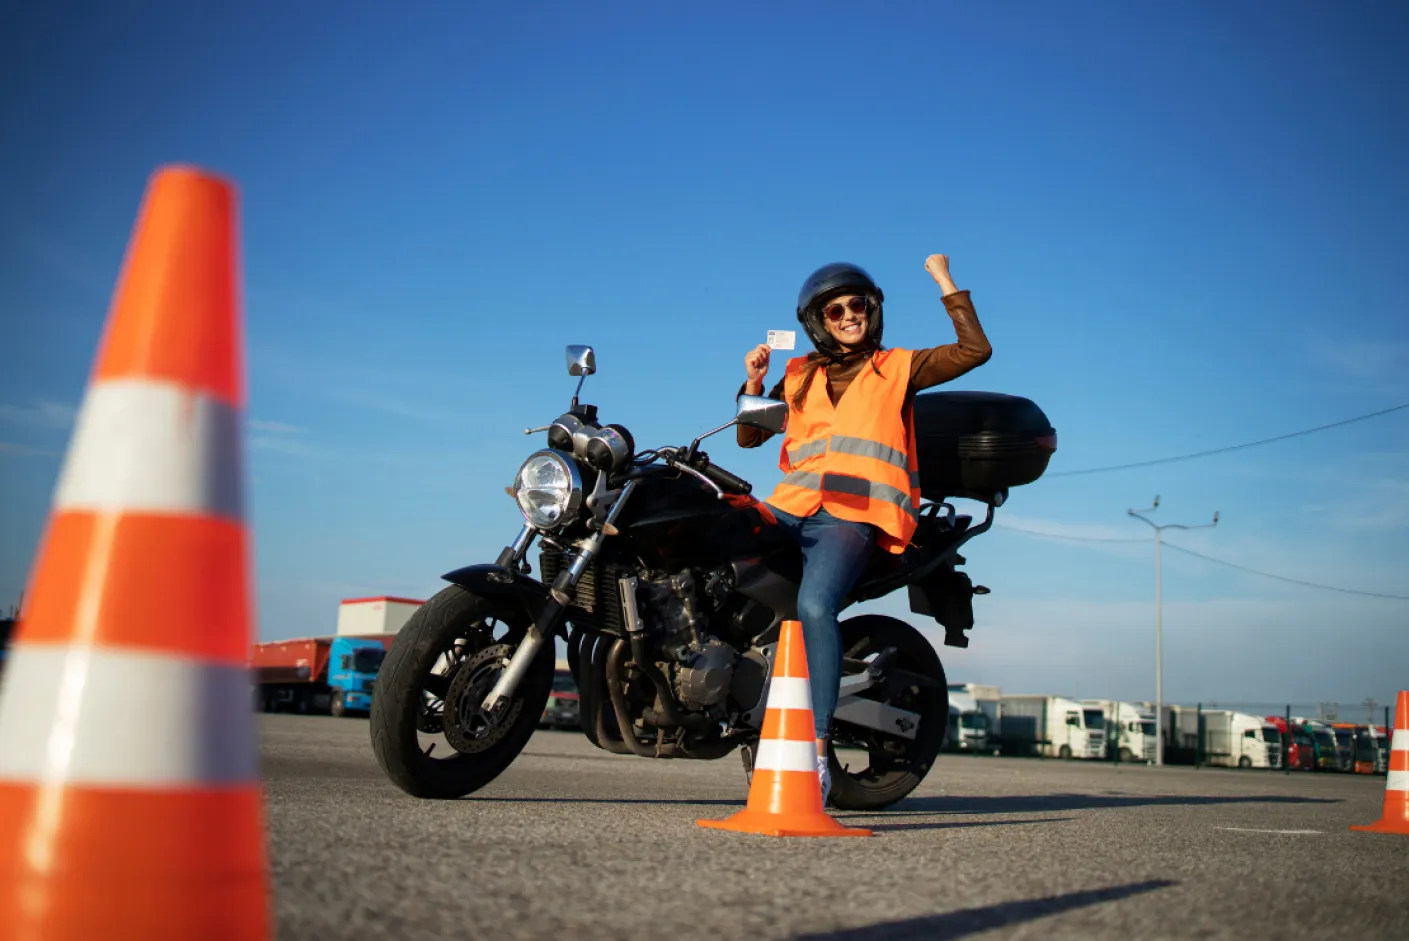 Test moto : le nouvel code test ETM pour passer le test moto